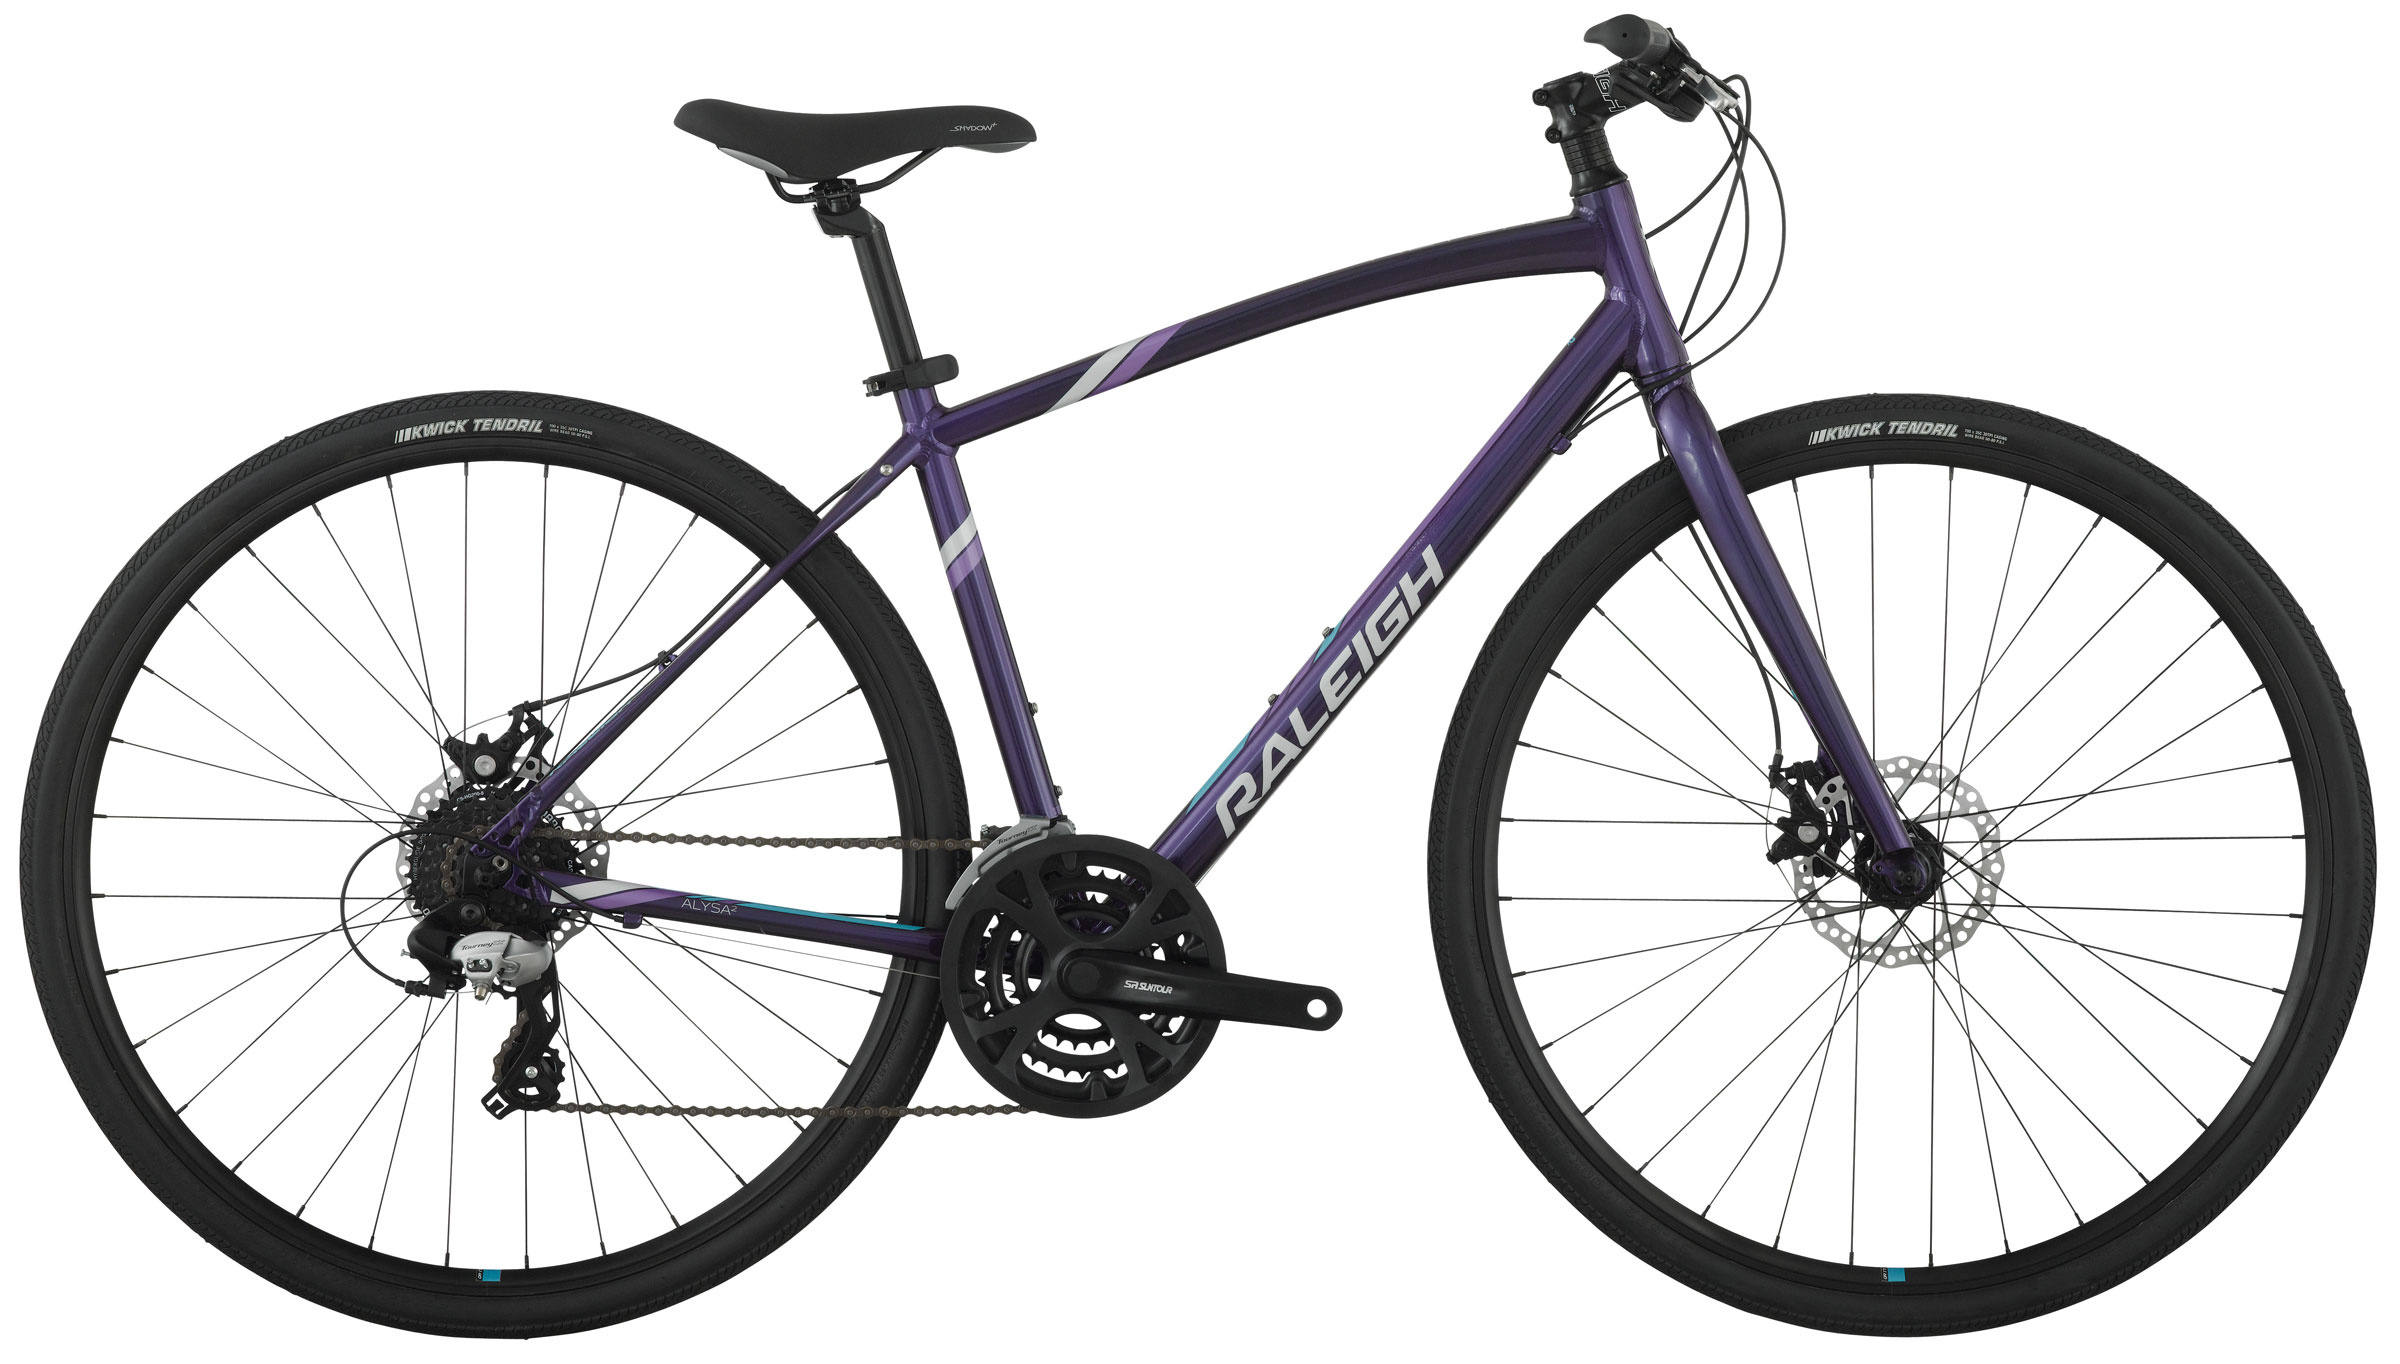 Raleigh Bikes, Alysa 2 bicycle, Bike details, 2400x1370 HD Desktop